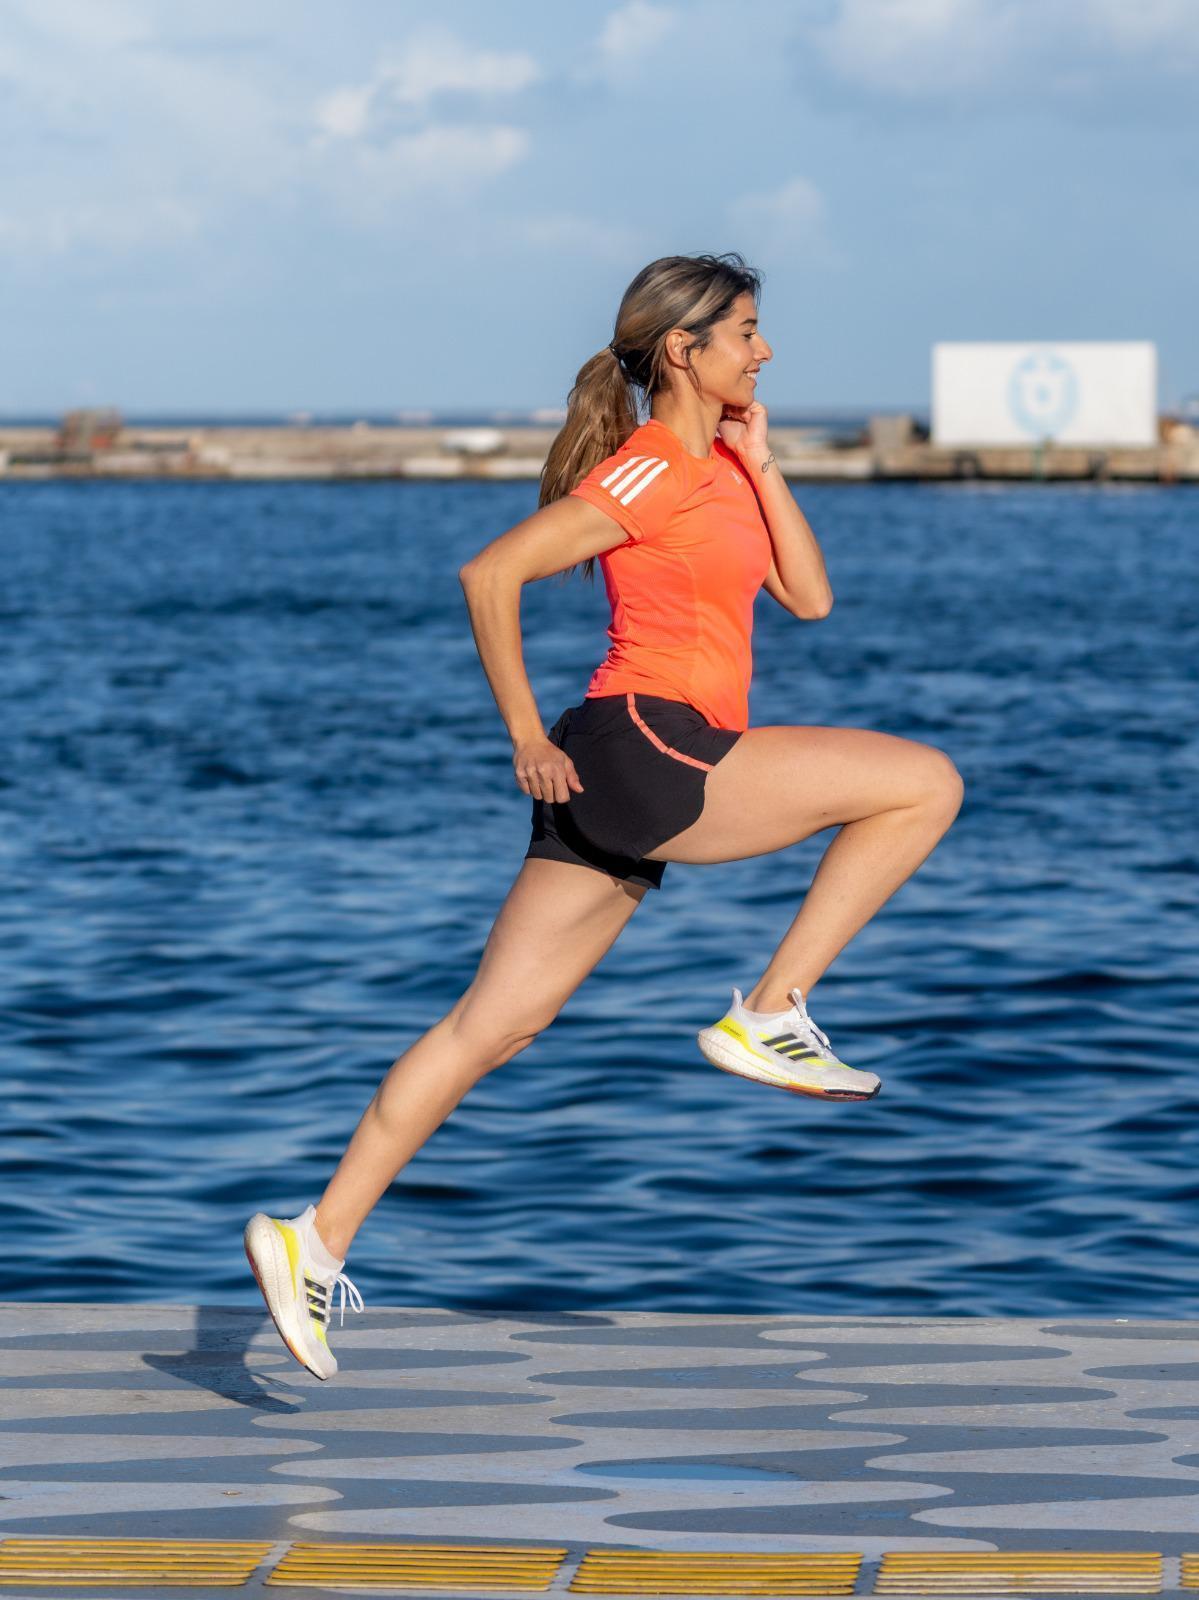 Maraton İzmir adidas sponsorluğunda sürdürülebilir bir dünya için koşuluyor